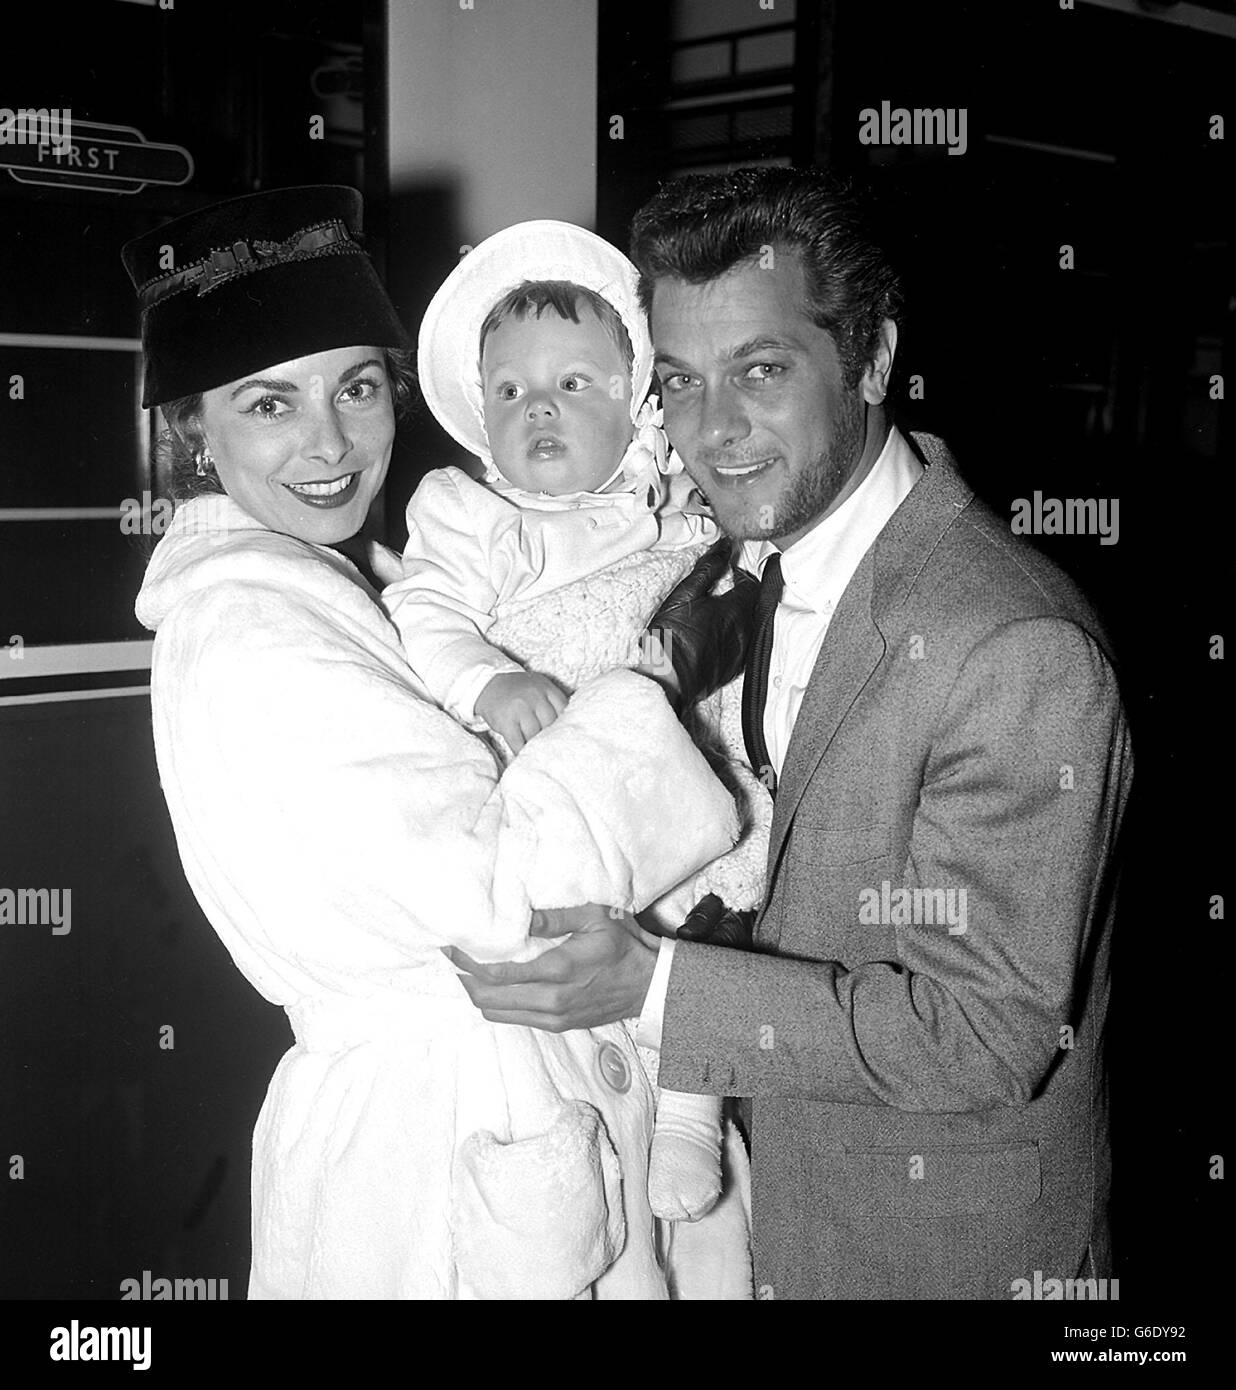 La "familia ideal" de Hollywood, el actor Tony Curtis y su esposa actriz Janet Leigh y su hija de 11 meses Kelly en Paddington Station, Londres. Foto de stock